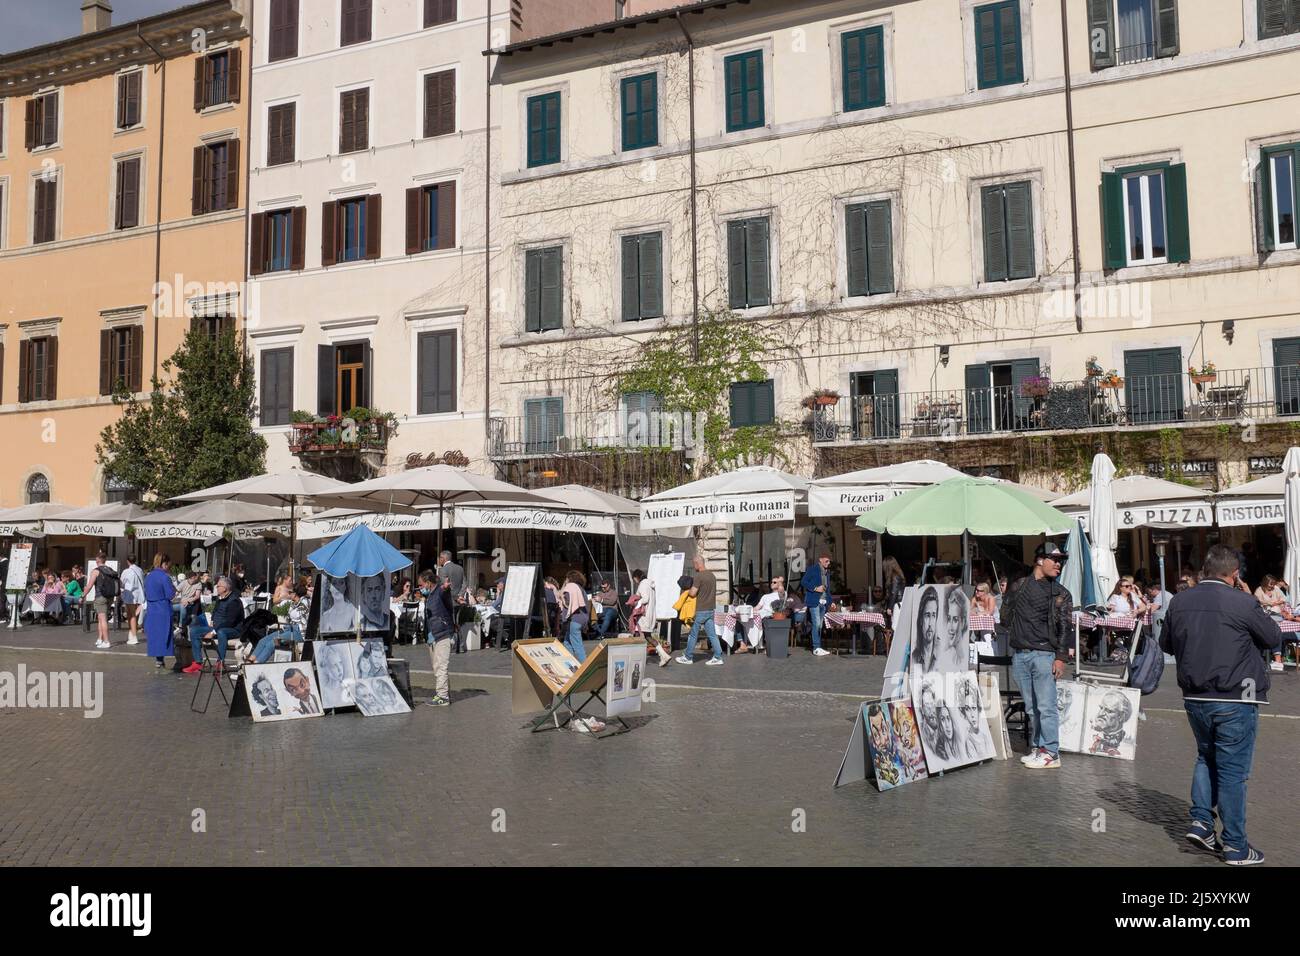 Portrait d'images artistes à Piazza Navona Rome Italie Banque D'Images